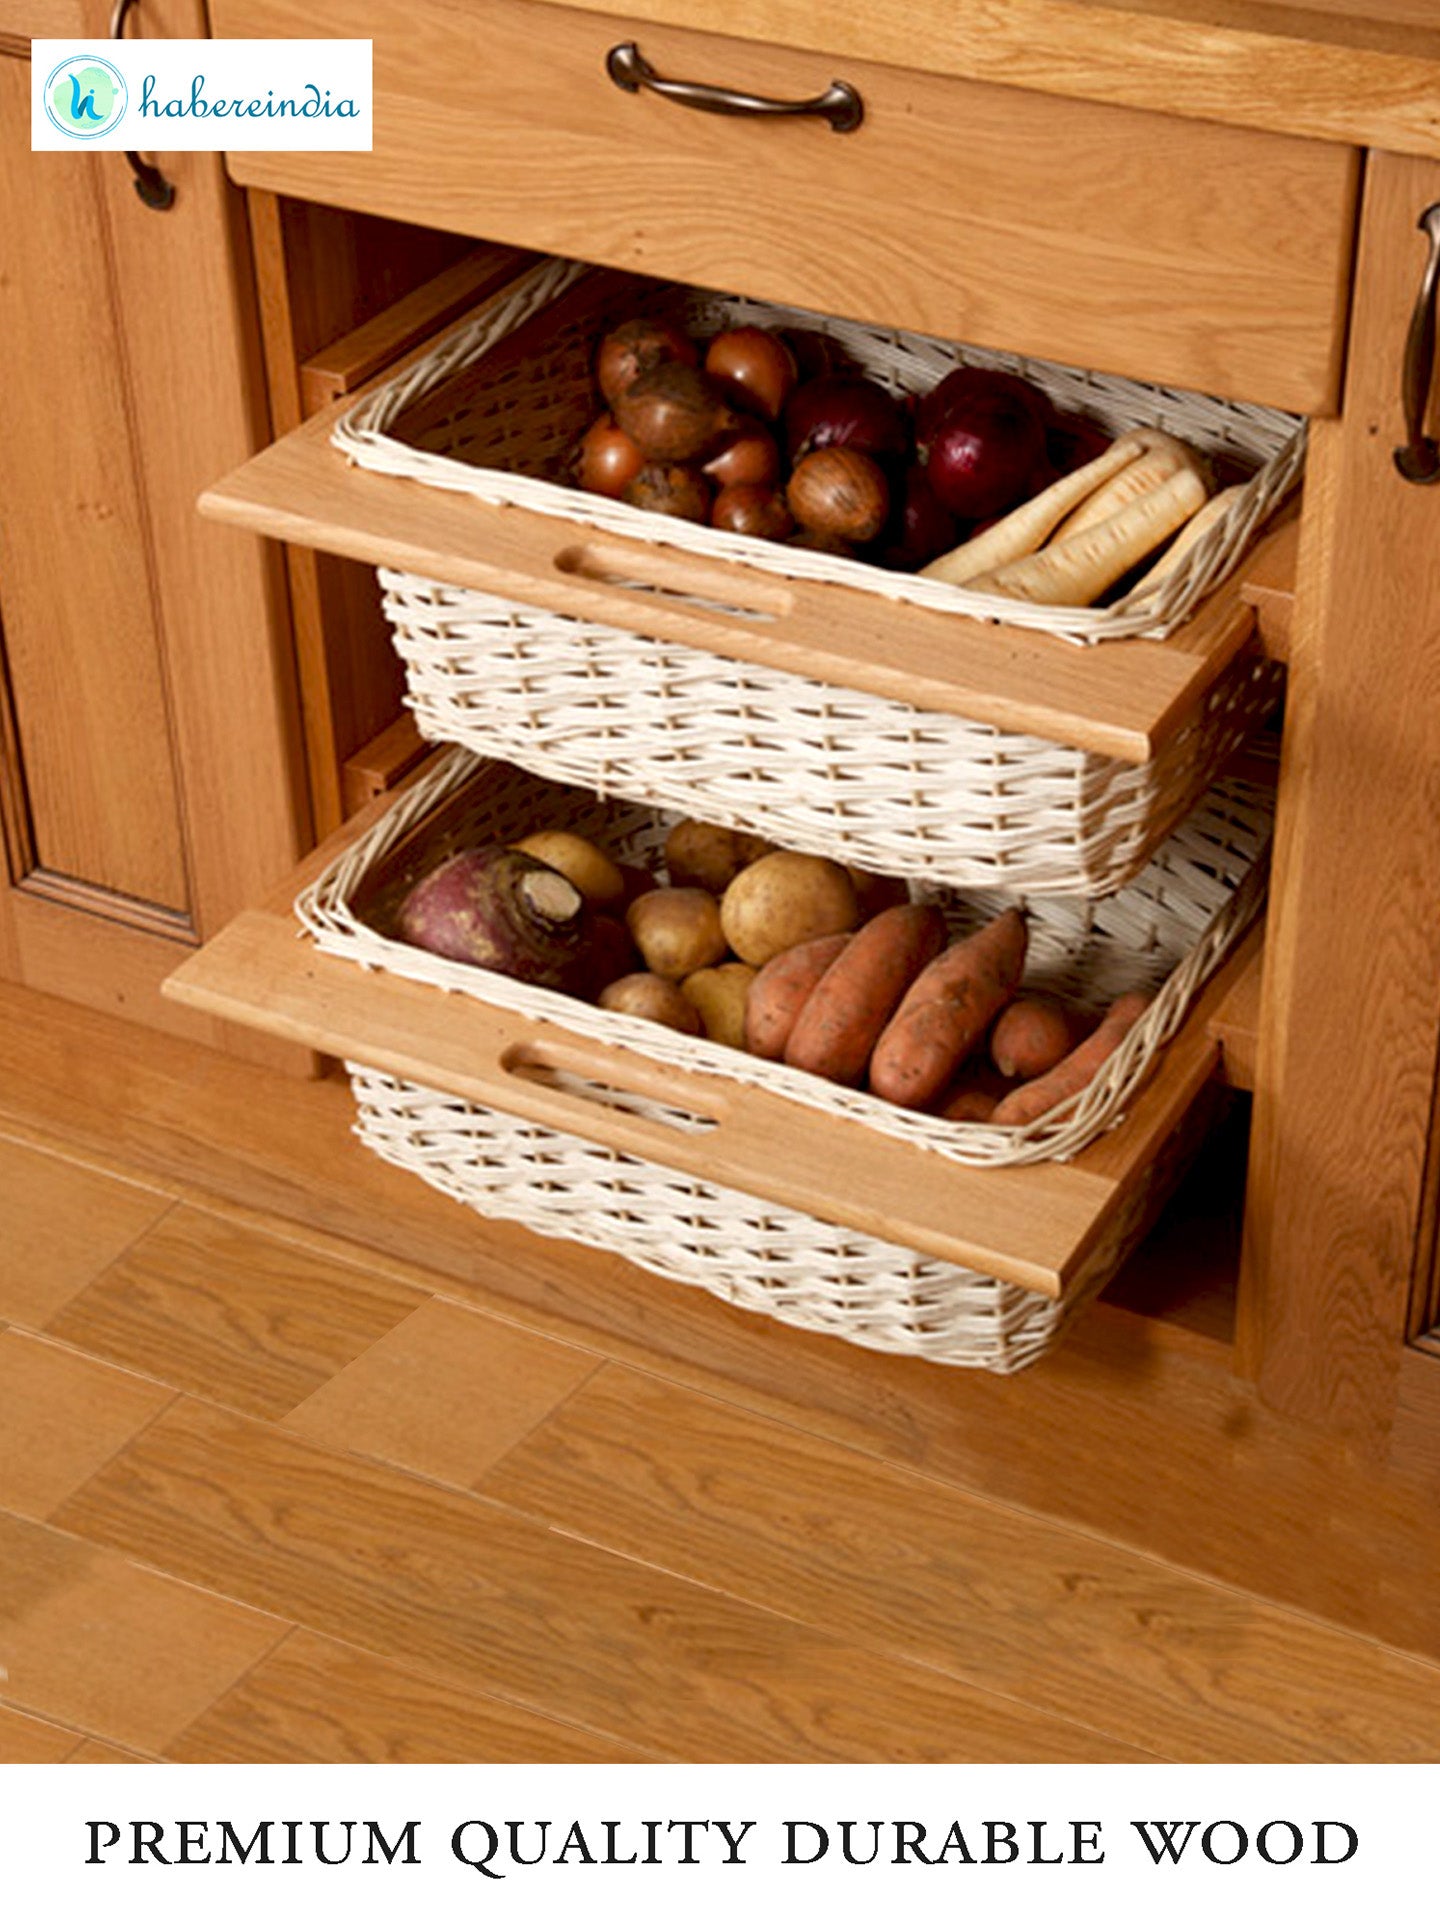 Wicker Modular Kitchen Basket,Onion Basket